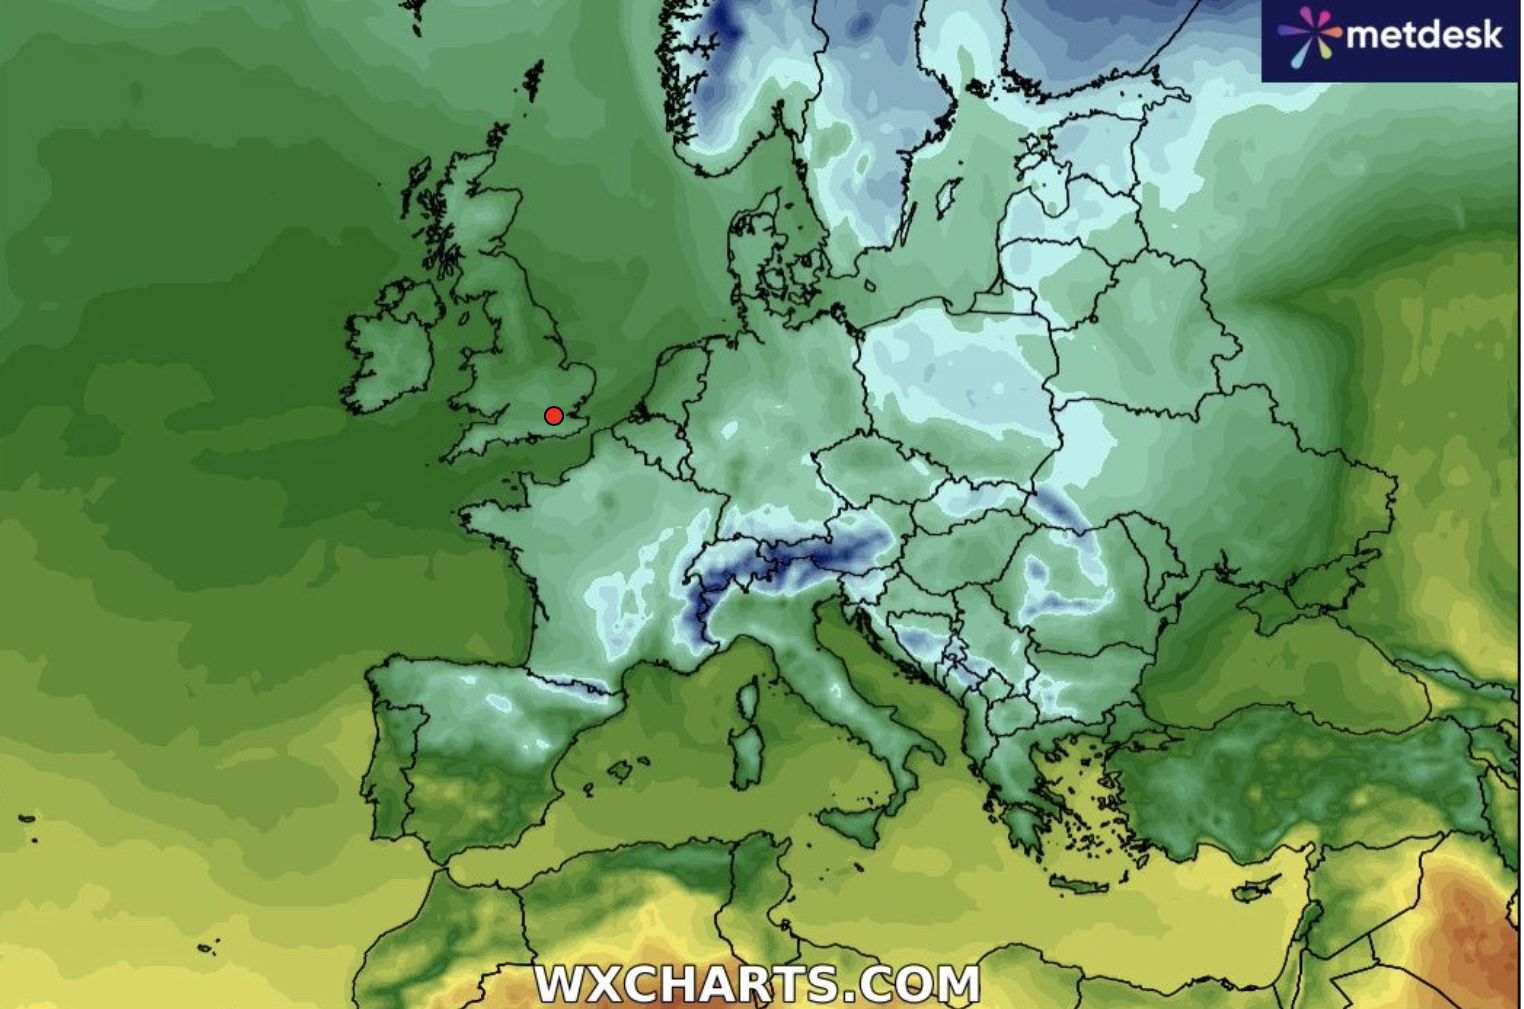 zacznie się już jutro. do polski nadciąga duża zmiana pogody